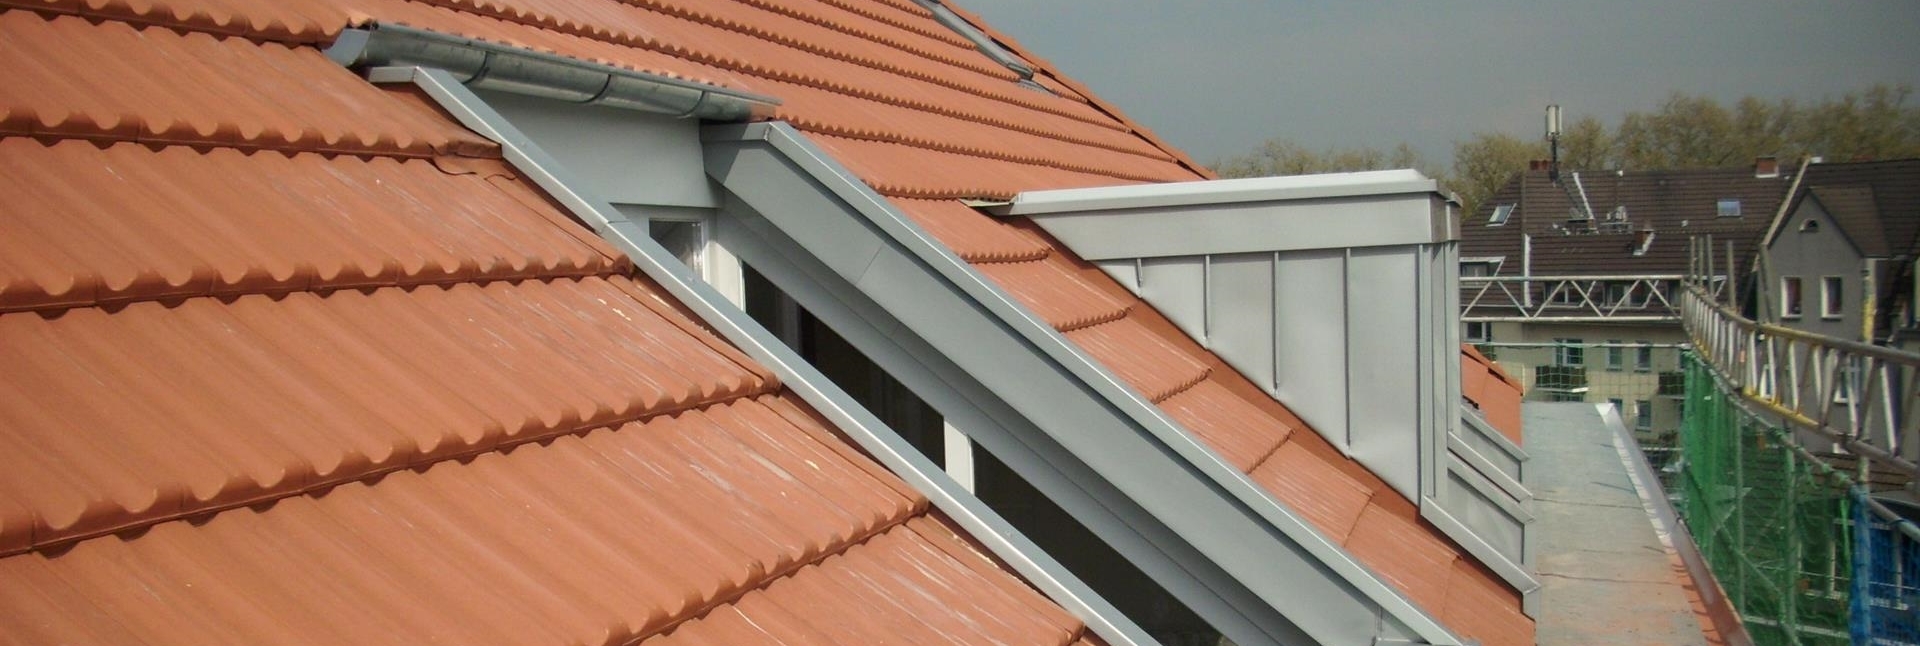 eingedecktes Dach von Bedachungen Heinen - Dachdecker in Leverkusen